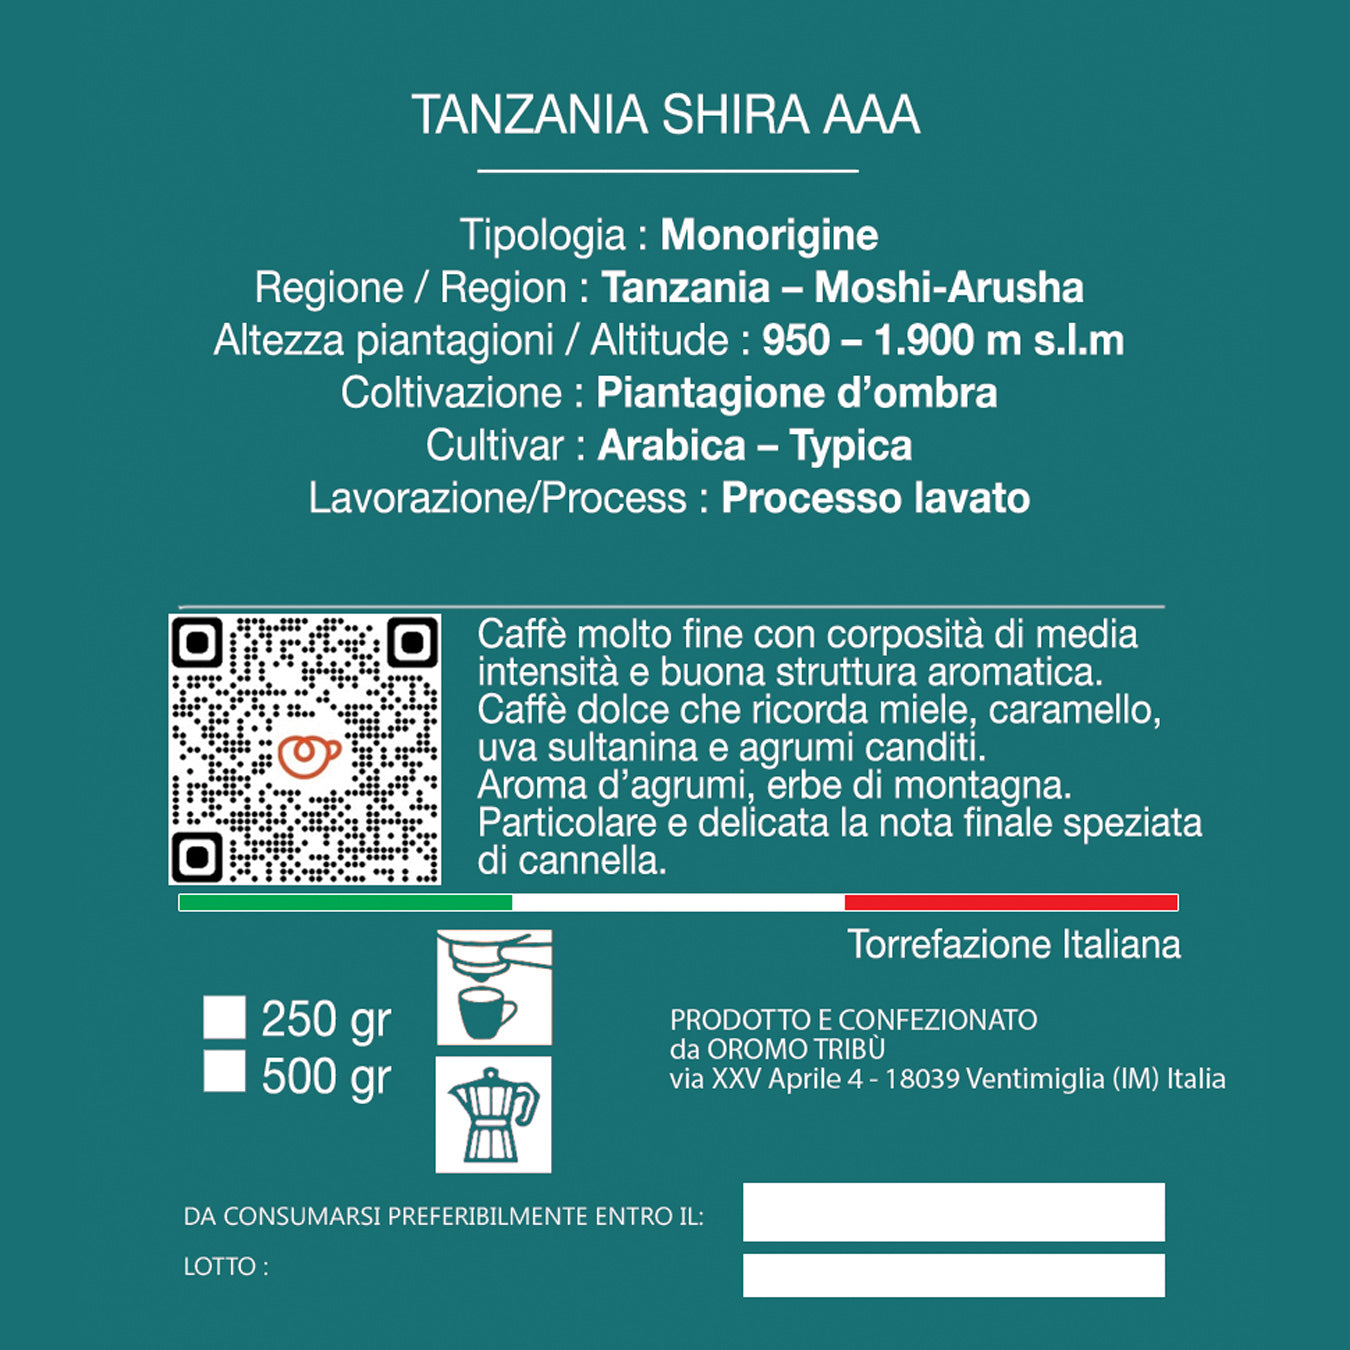 Tanzania Shira Specialty